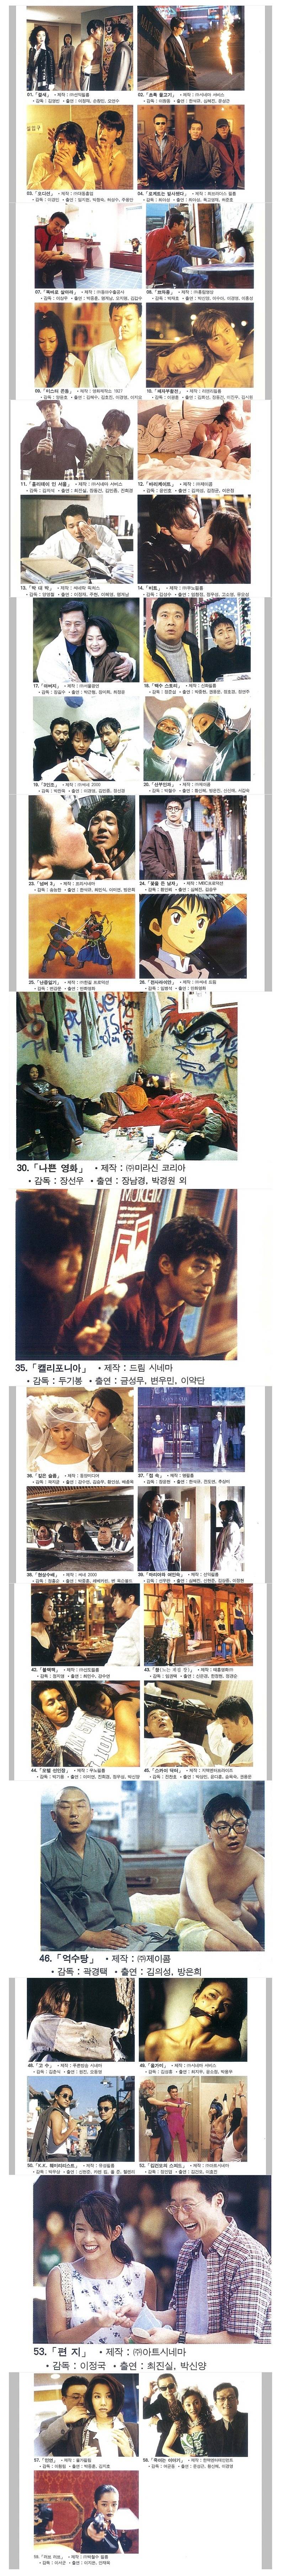 1997년 한국 영화 리스트.jpg | 인스티즈